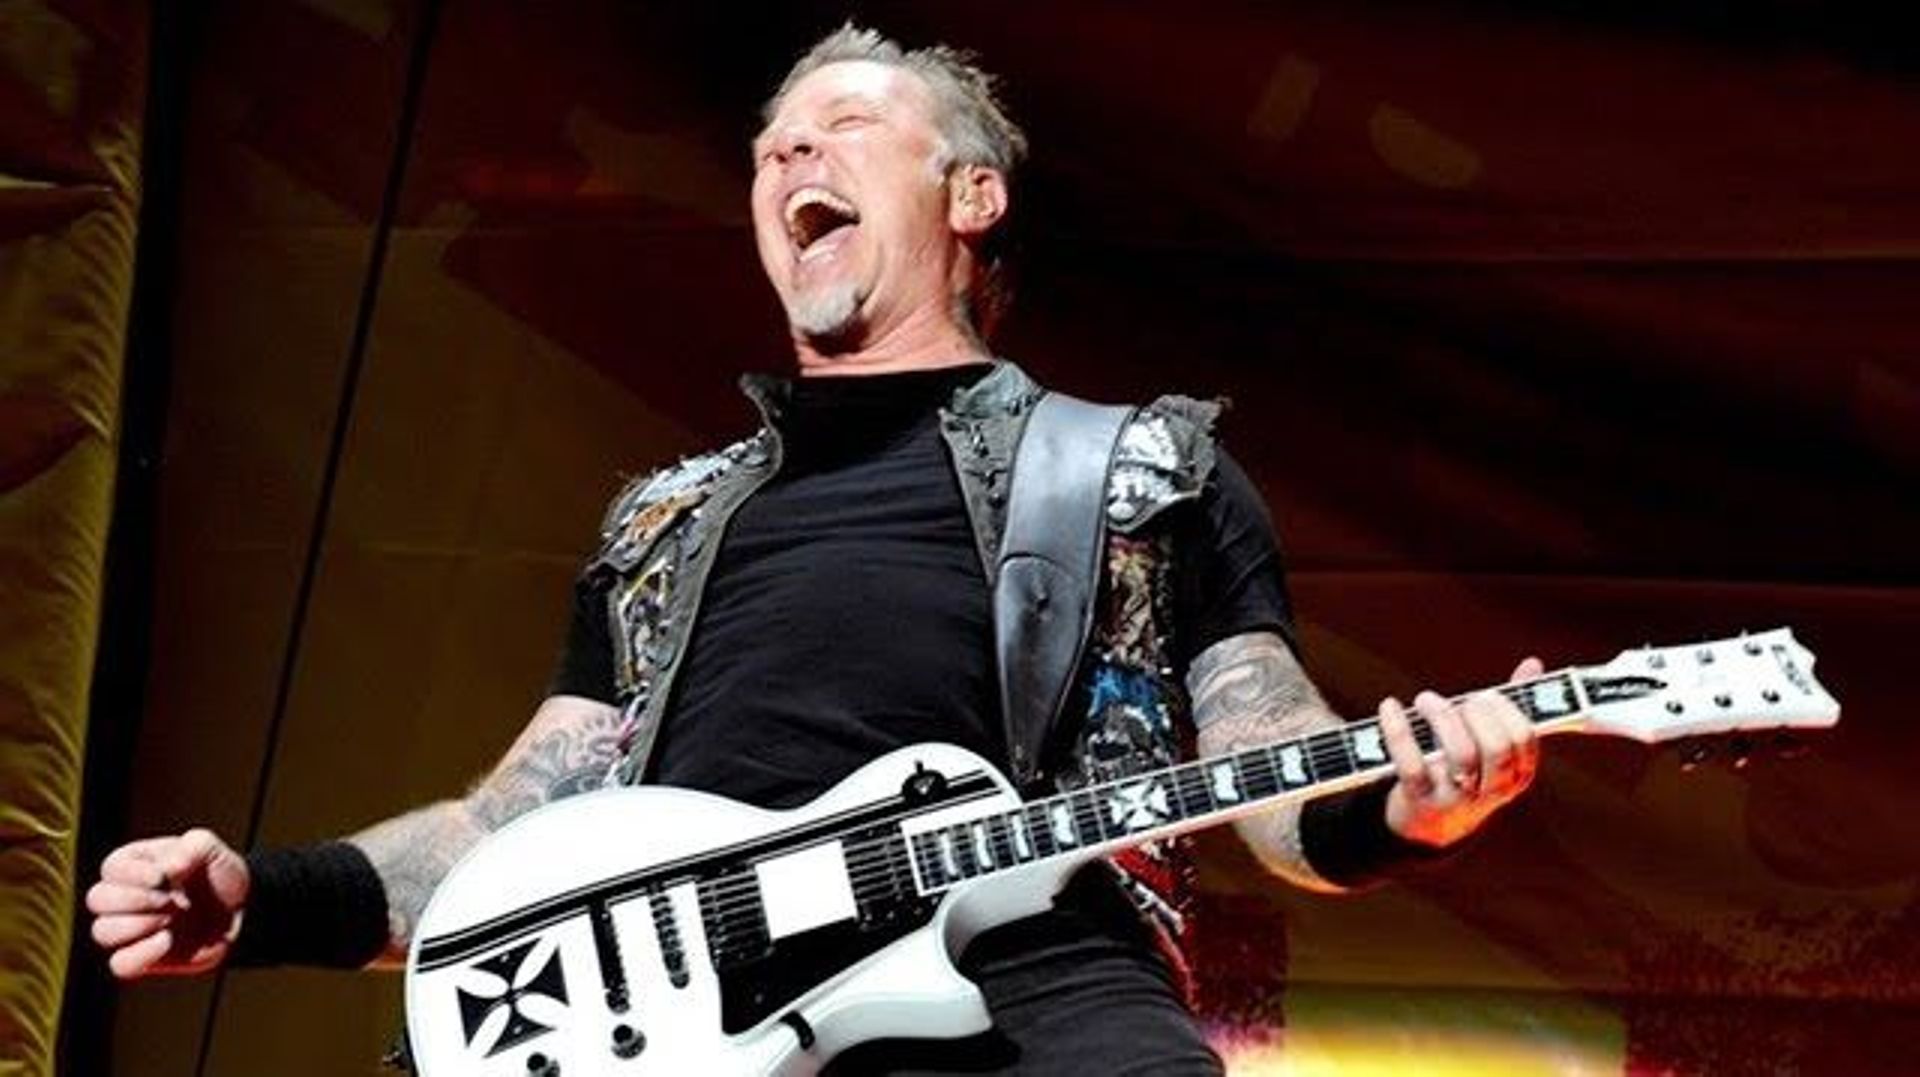 [Zapping 21] Une compilation des rires de James Hetfield dans les chansons de Metallica